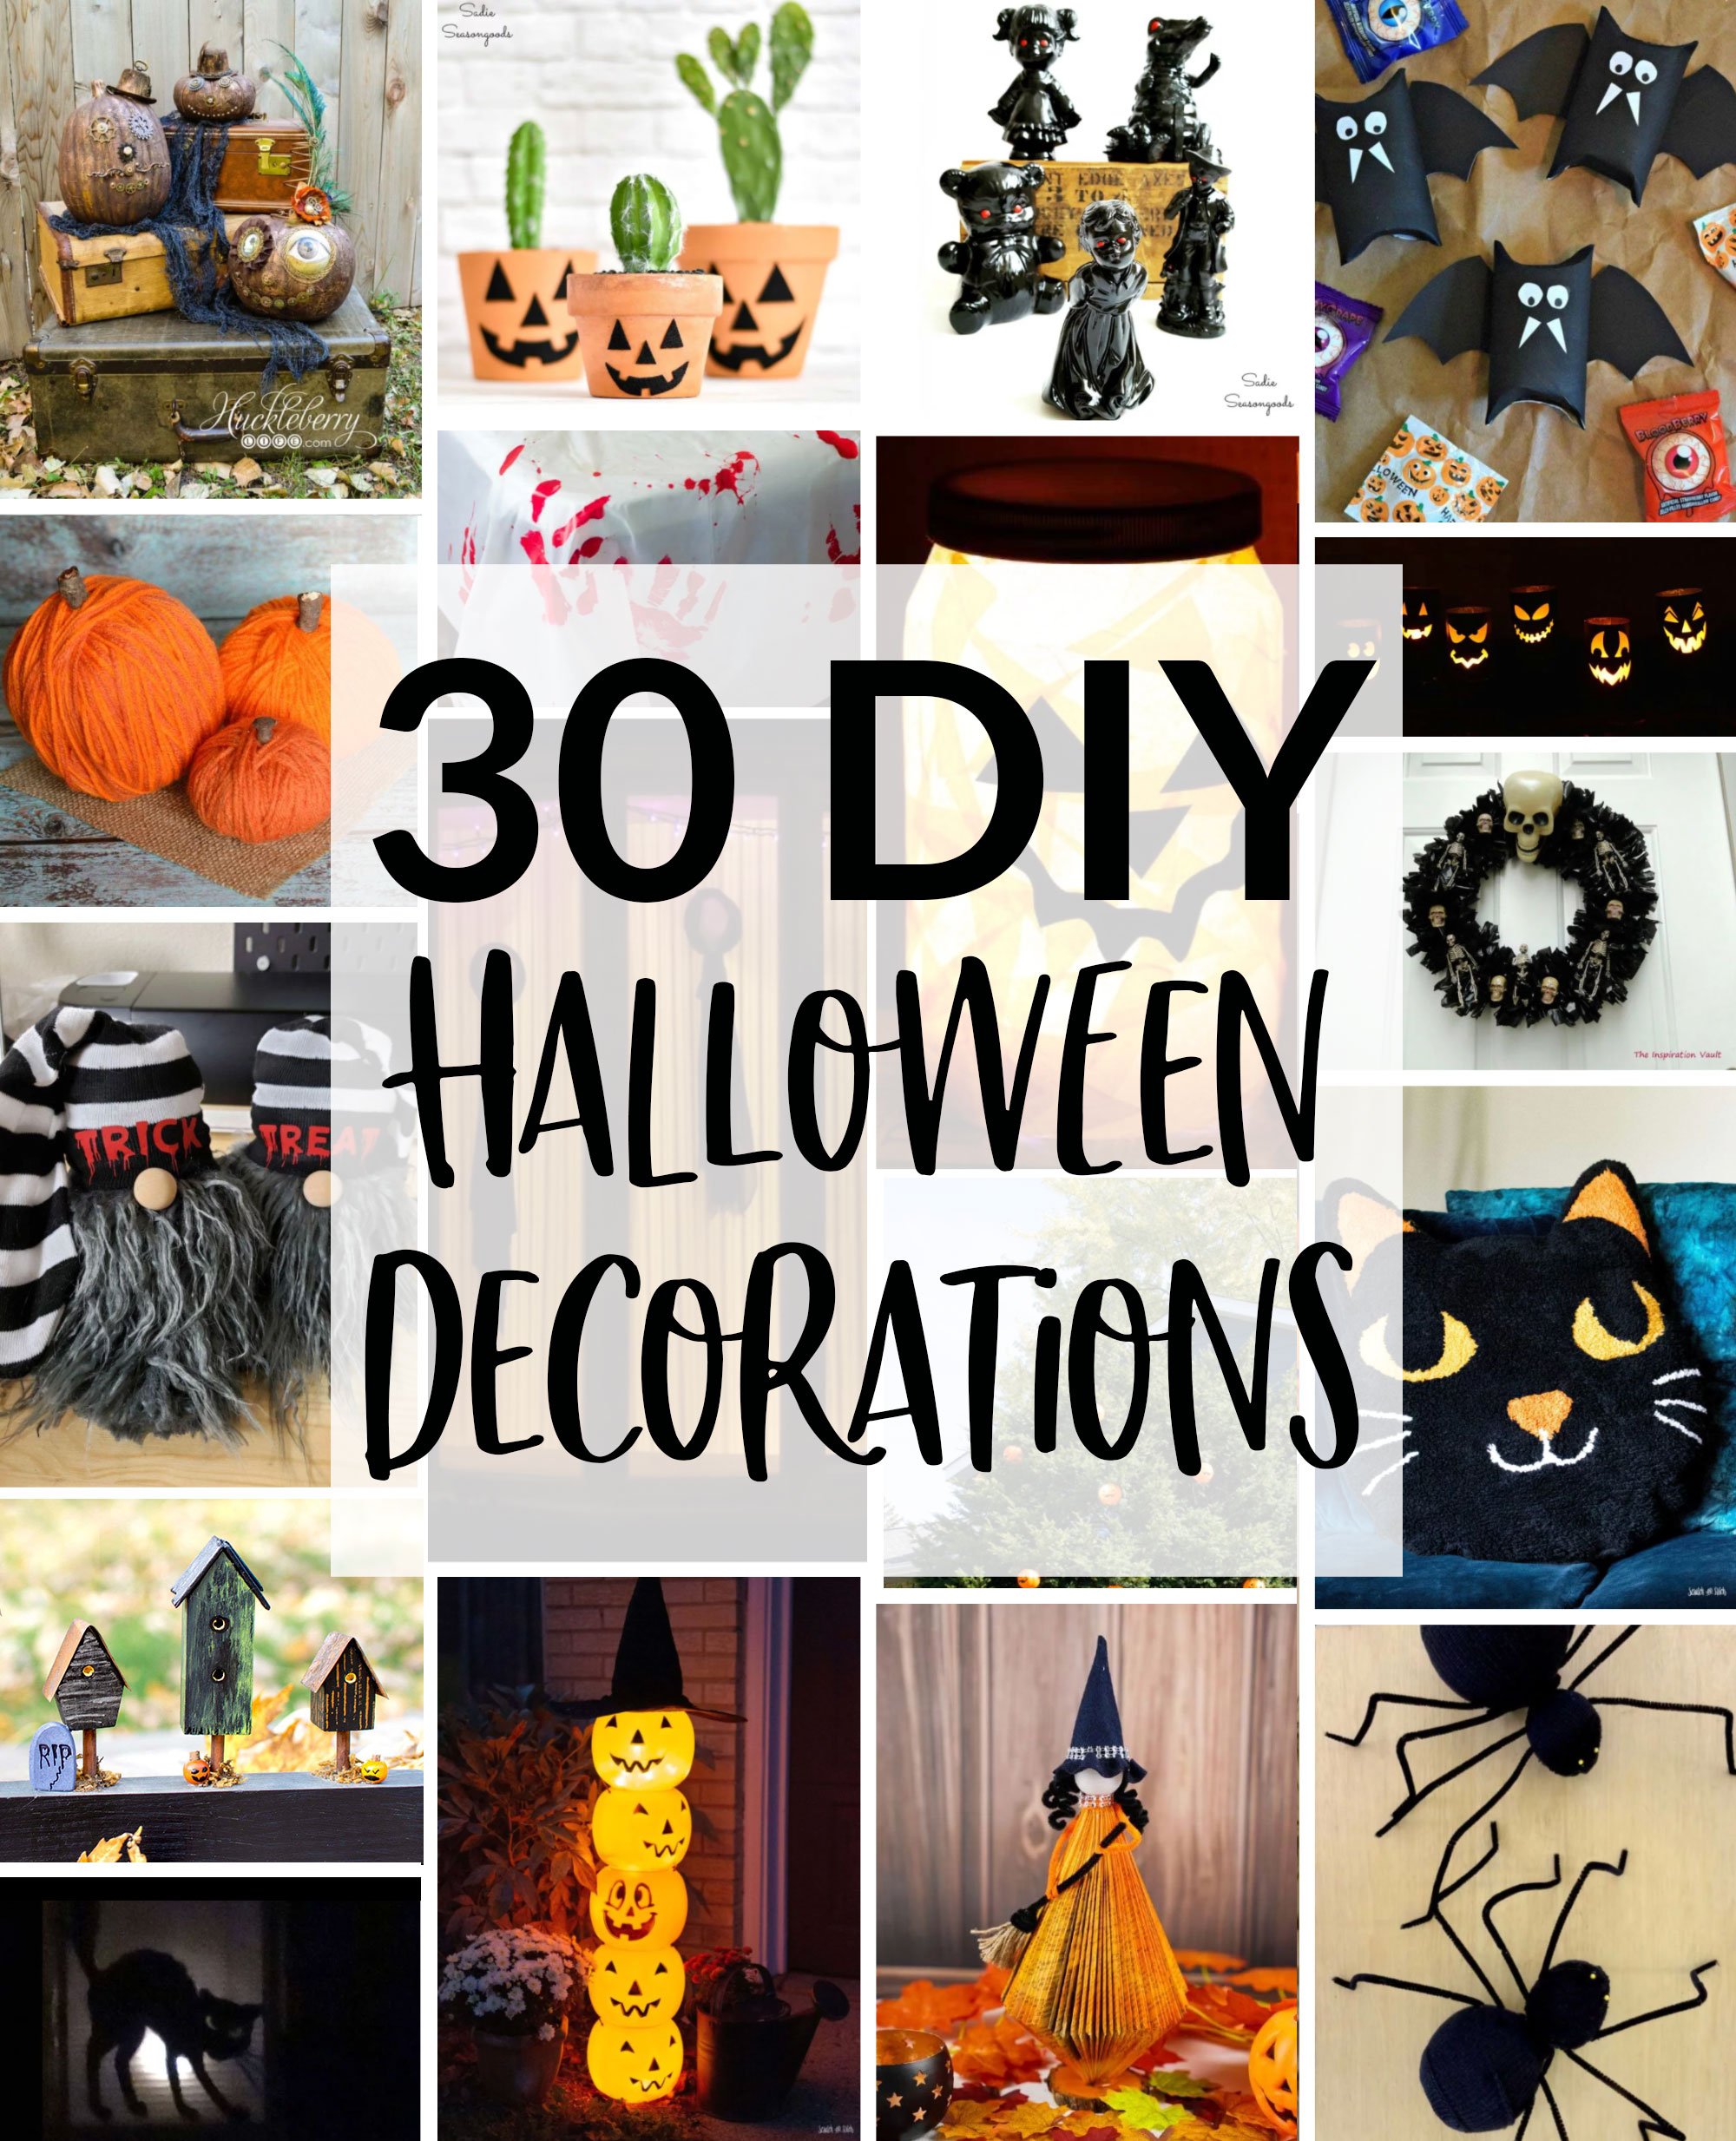 https://scratchandstitch.com/wp-content/uploads/2020/09/30-diy-halloween-decorations-scratchandstitch.jpg